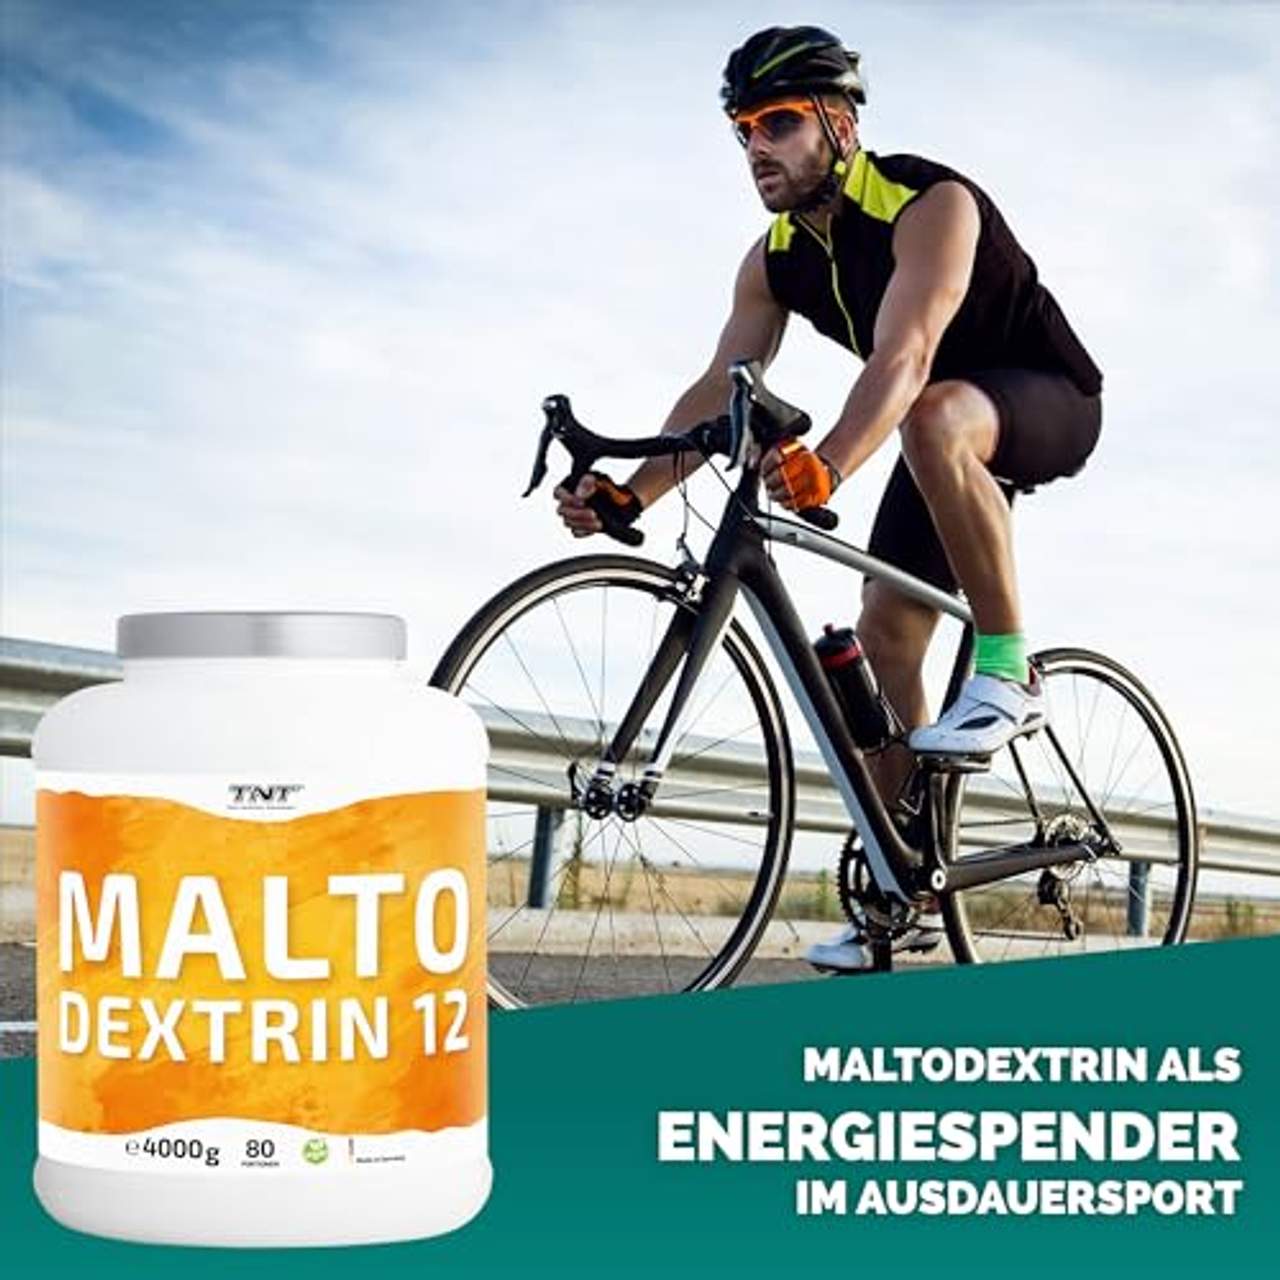 TNT 100% 4 kg Maltodextrin 12